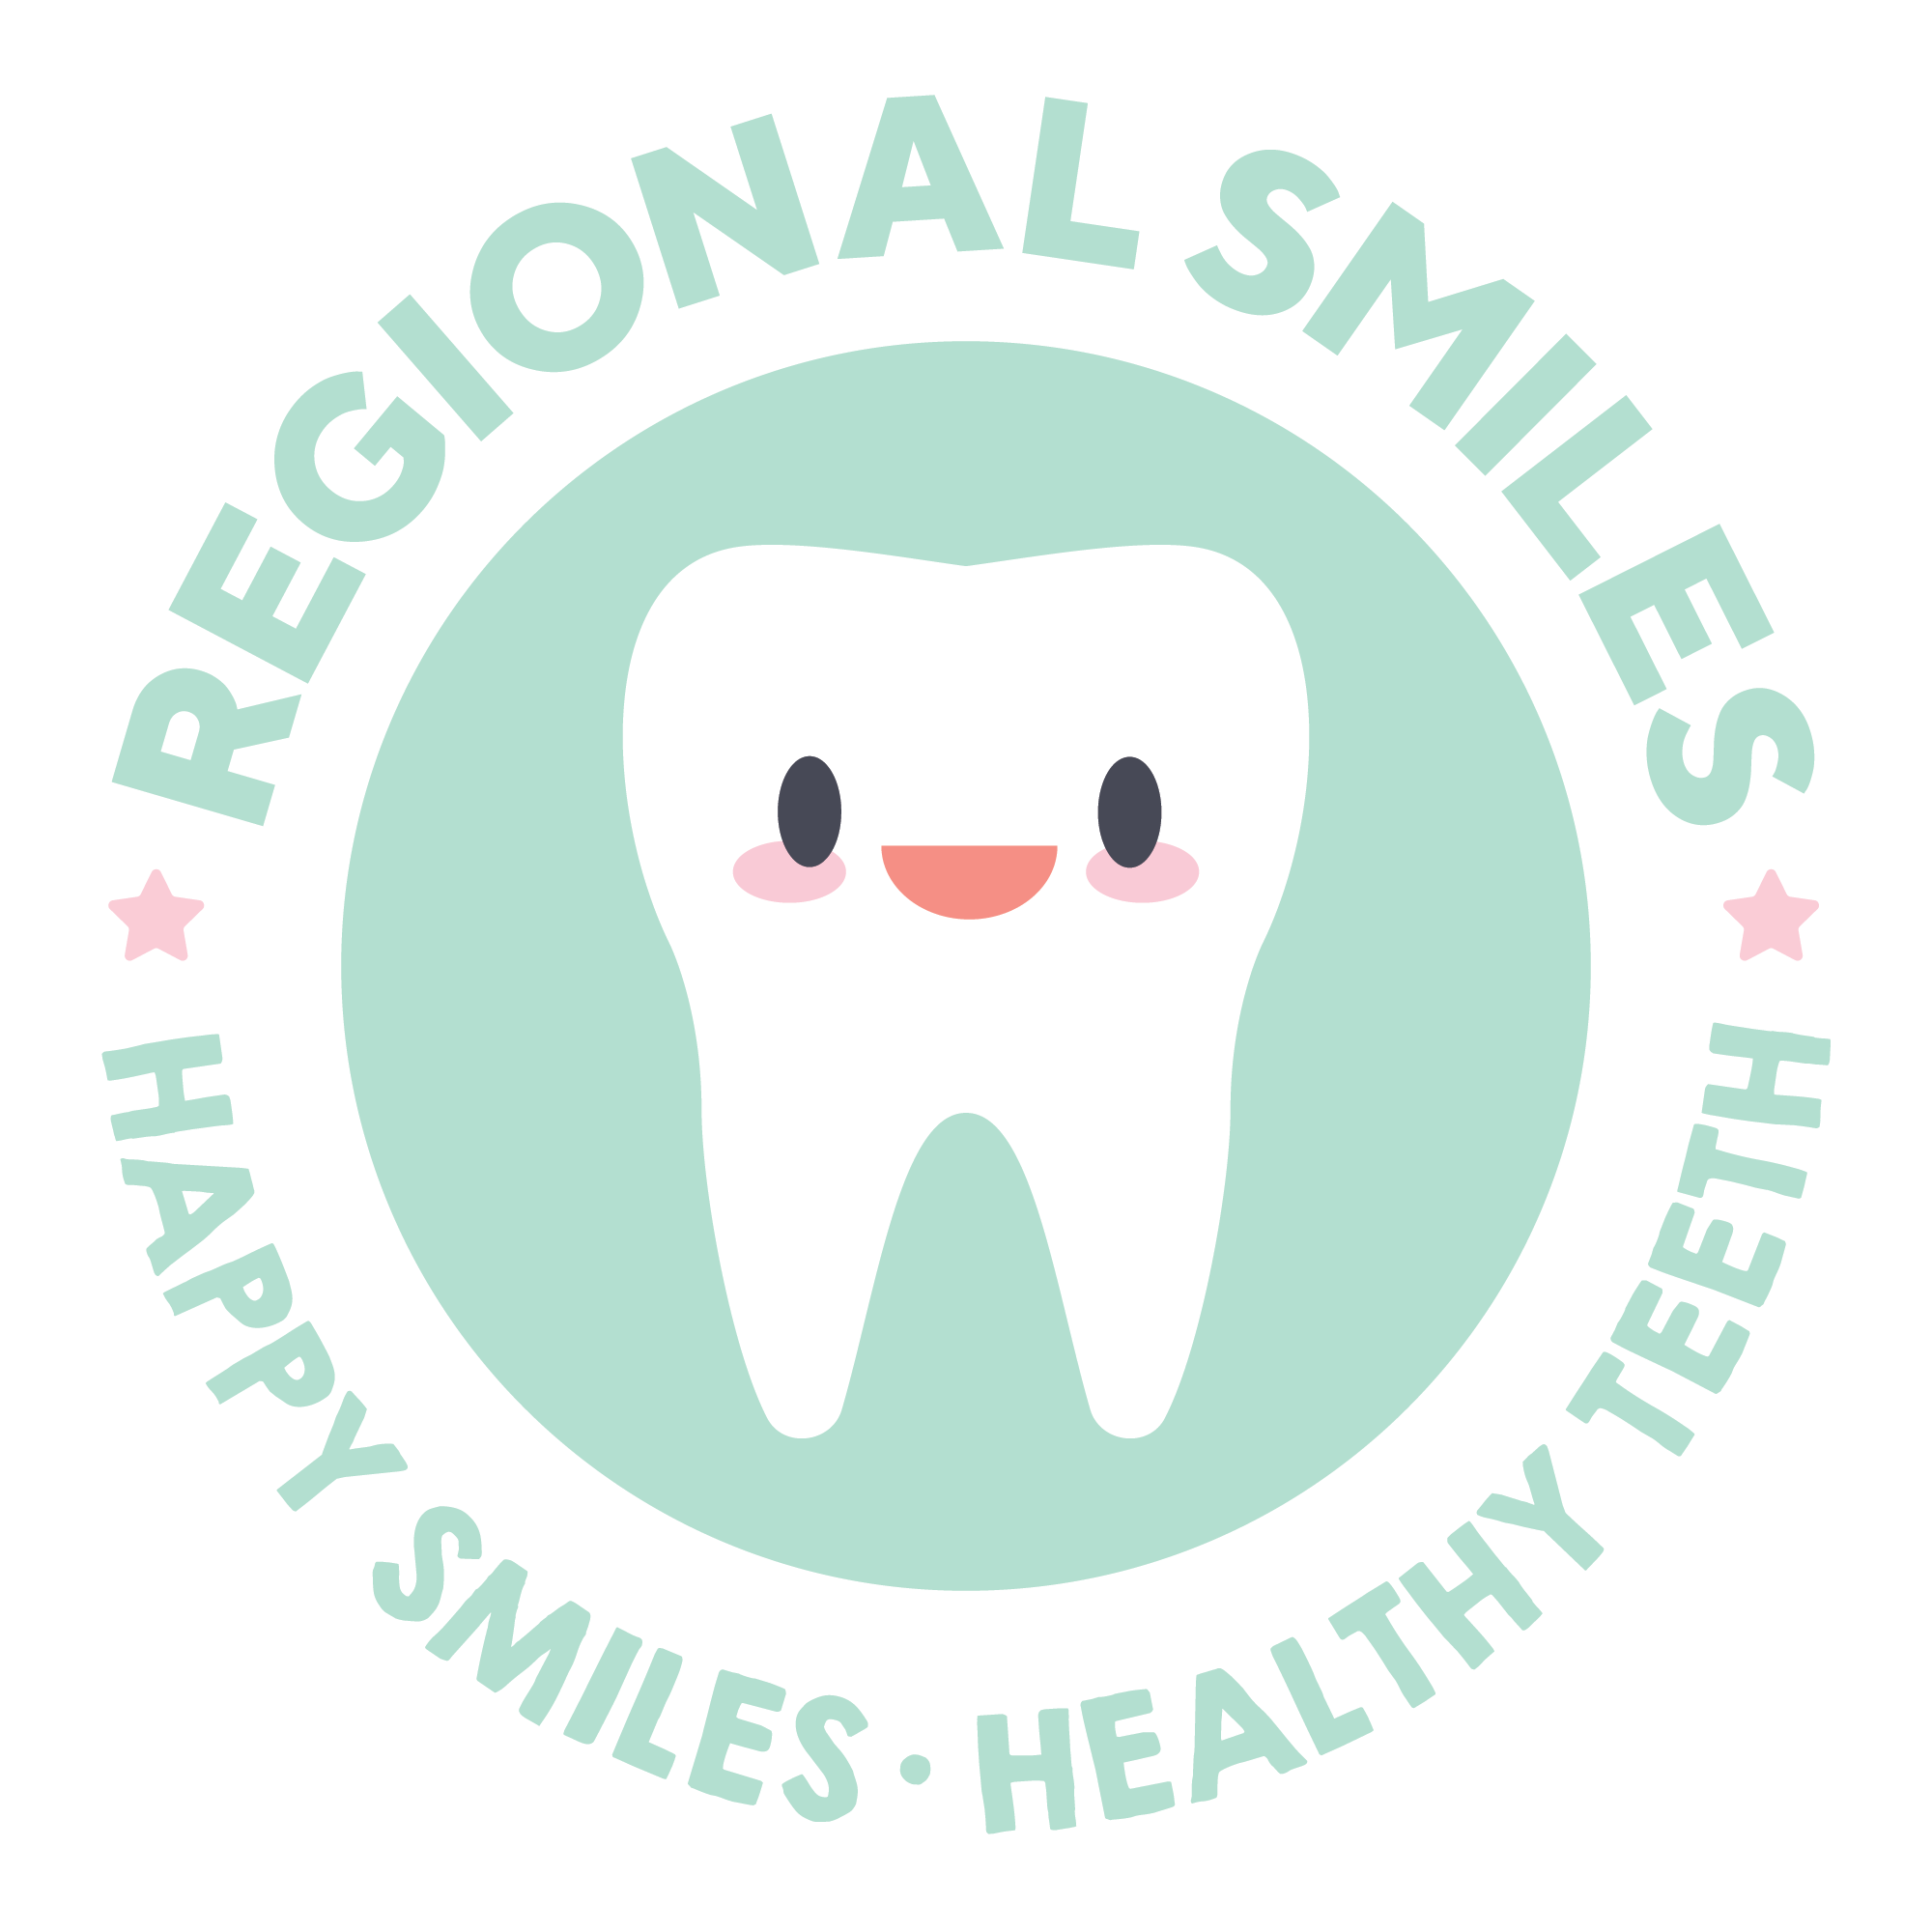 Regional Smiles 1.png